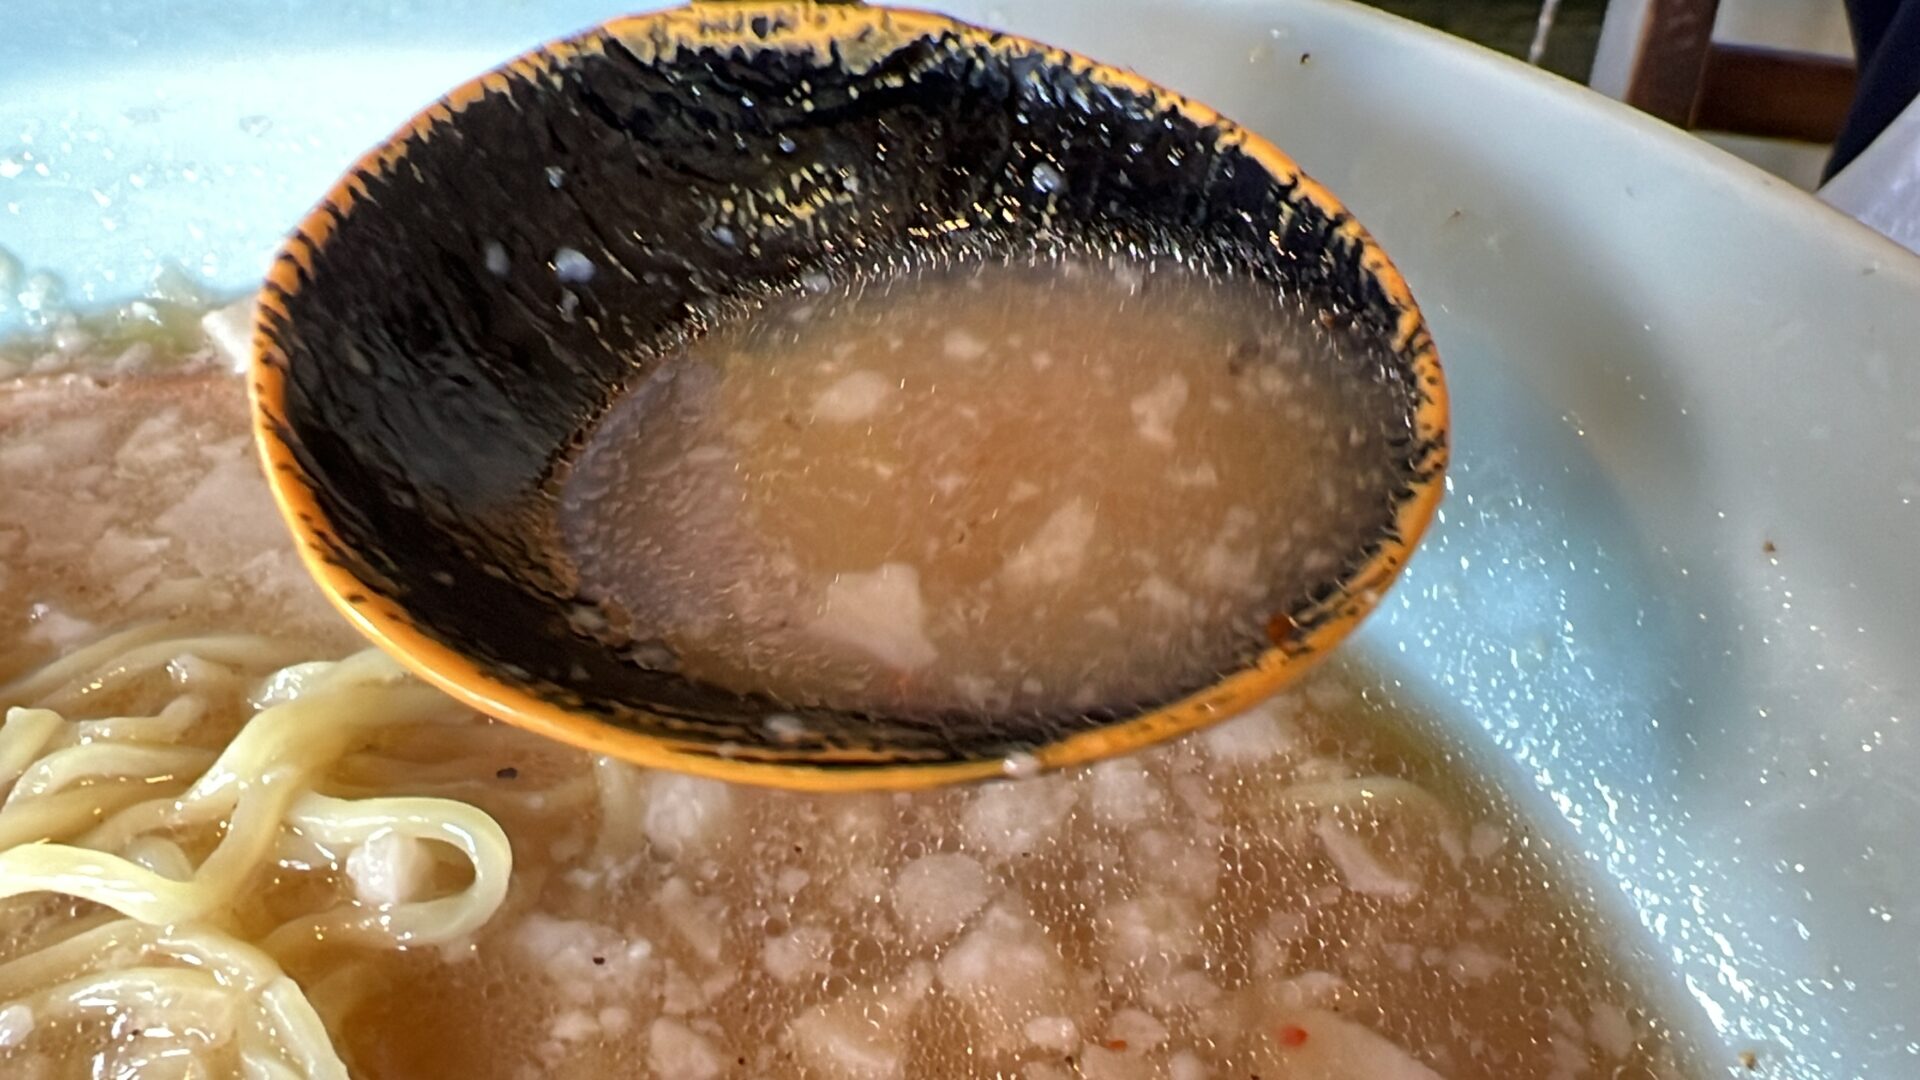 ニューラーメンショップ桶川豆板醤ニンニク味変後のスーパーチャーシューメンスープ